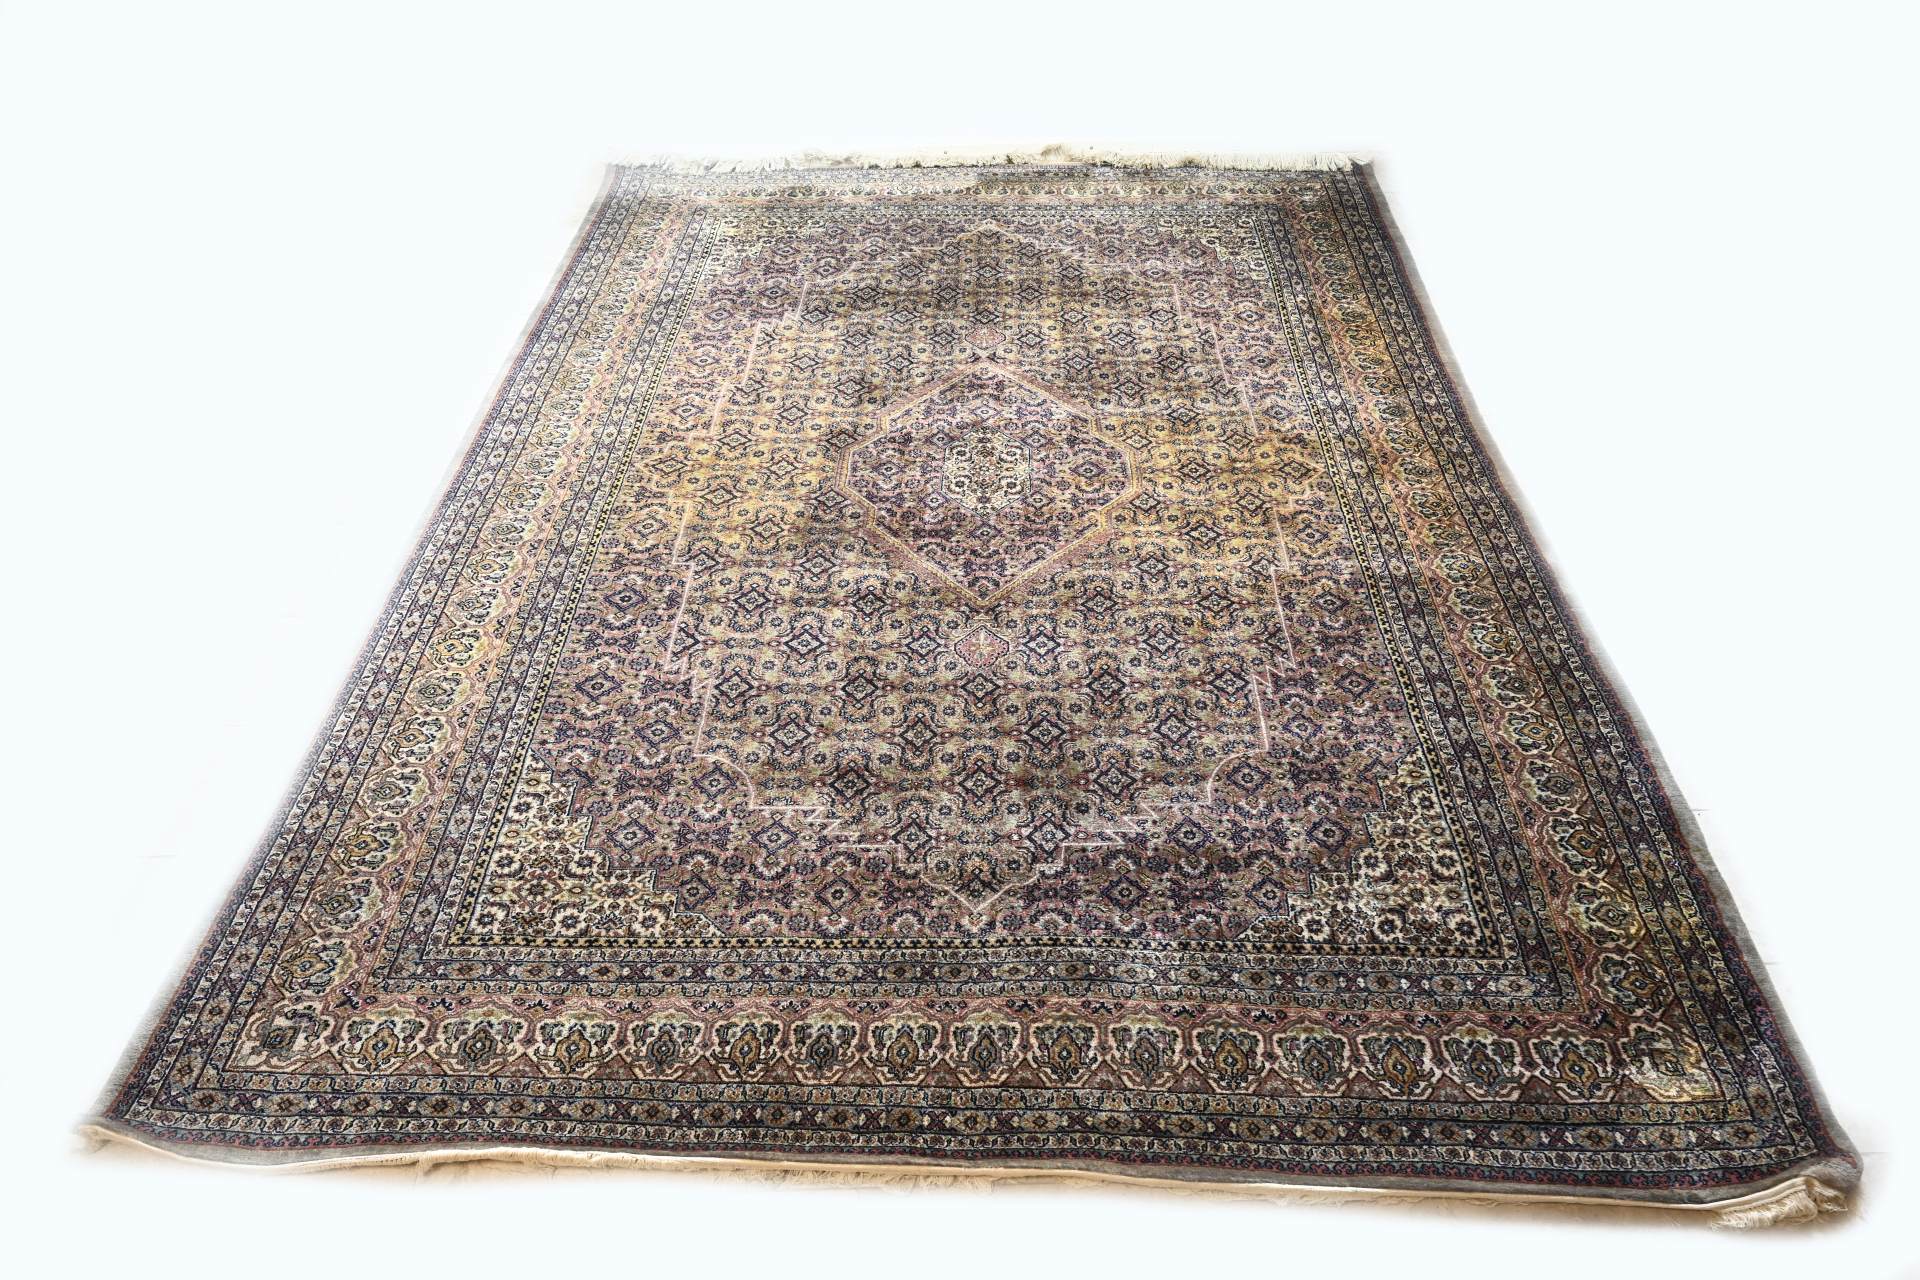 Persian rug (Bidjar)